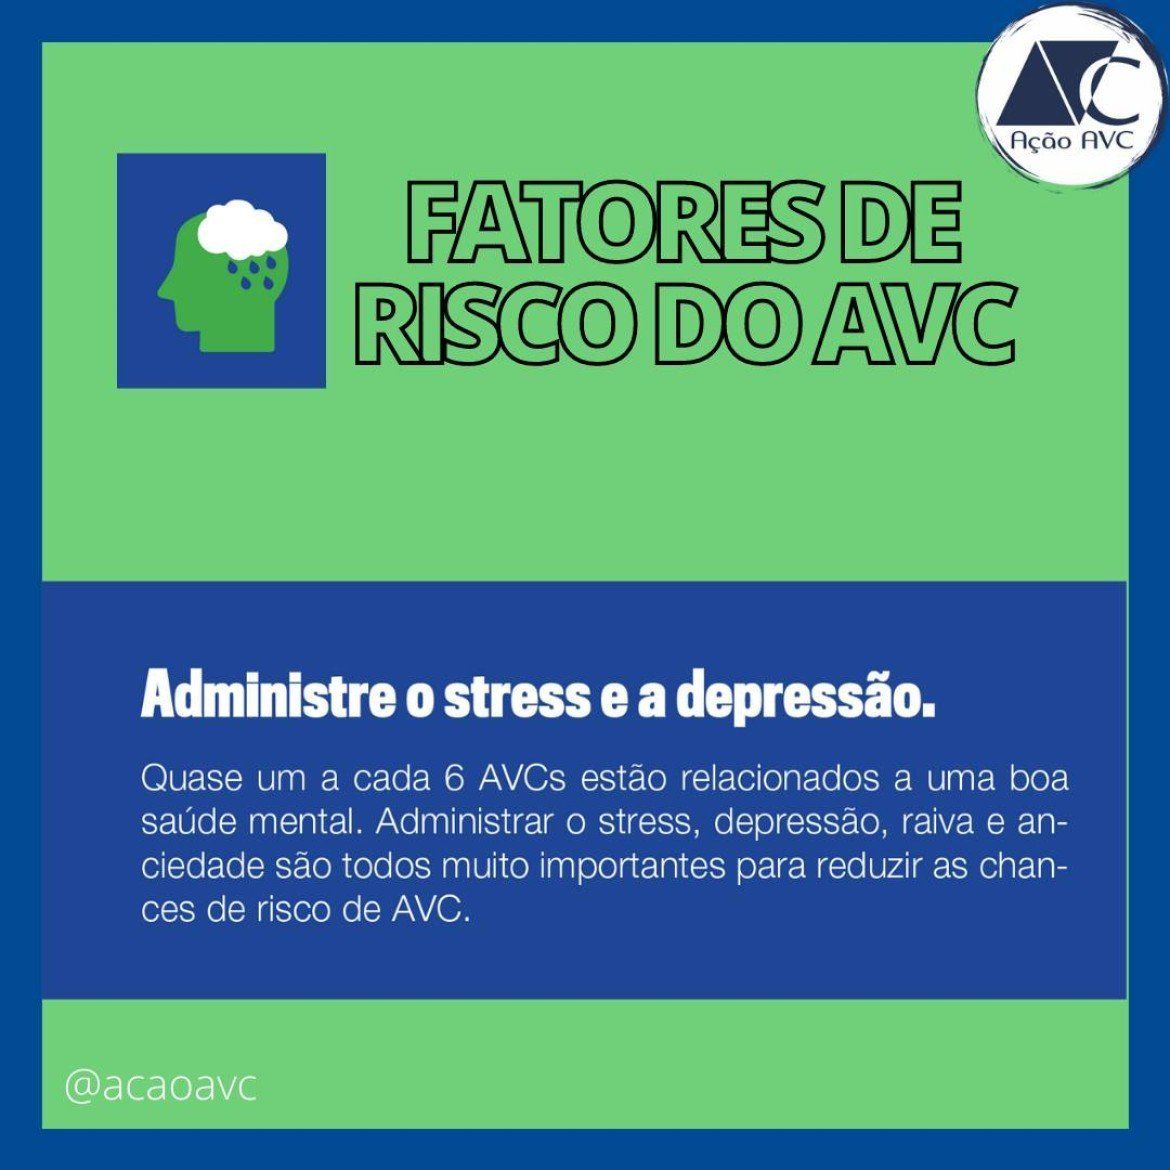 Estresse e depressão são riscos de AVC